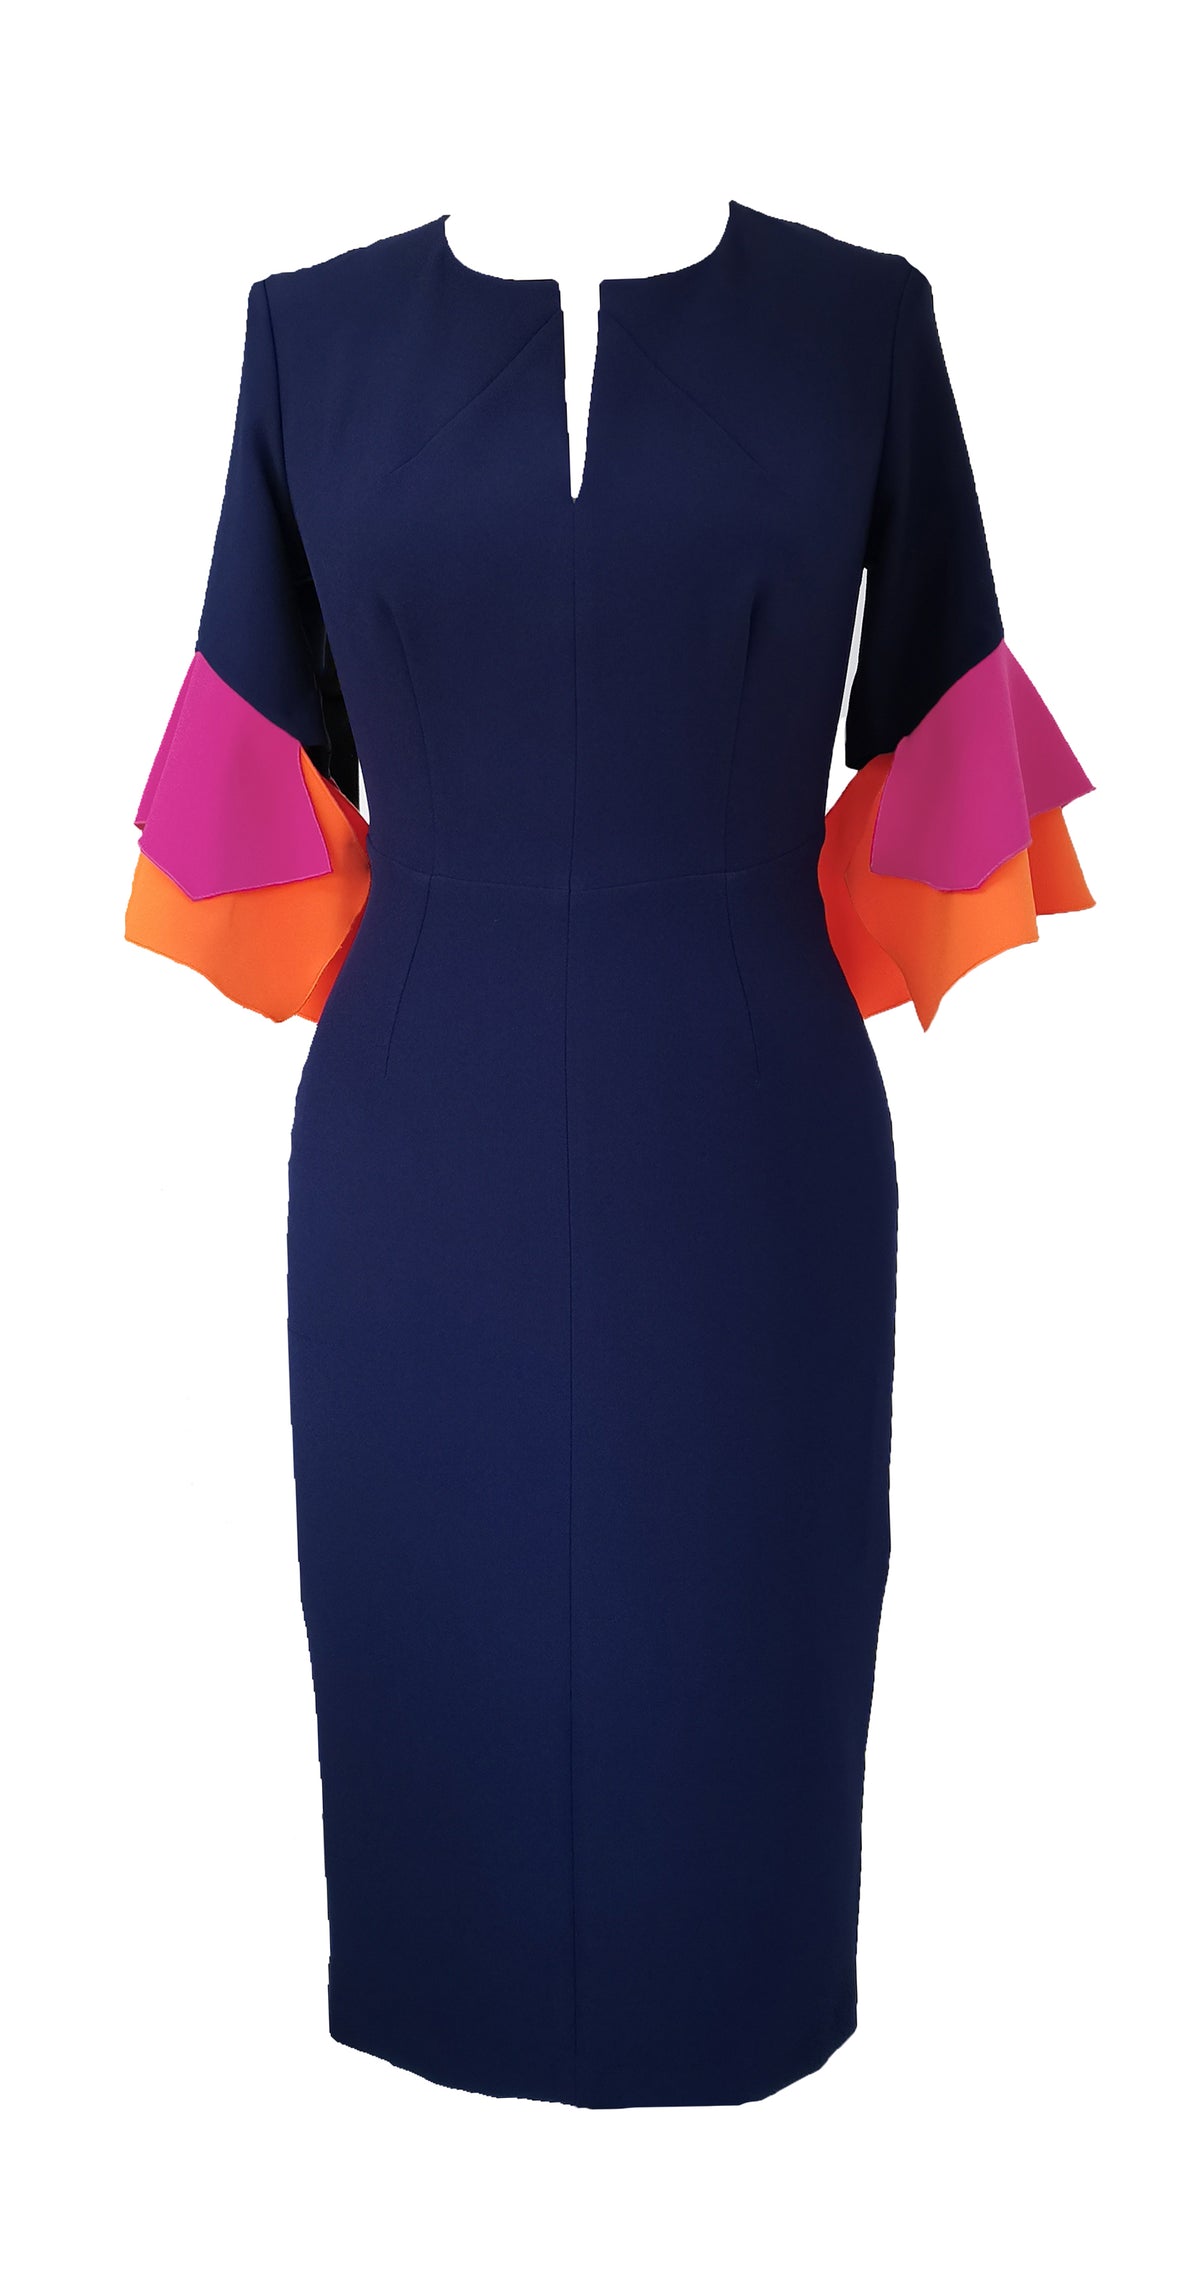 Susan Dress DRC318 Navy/Orange/Pink Crepe